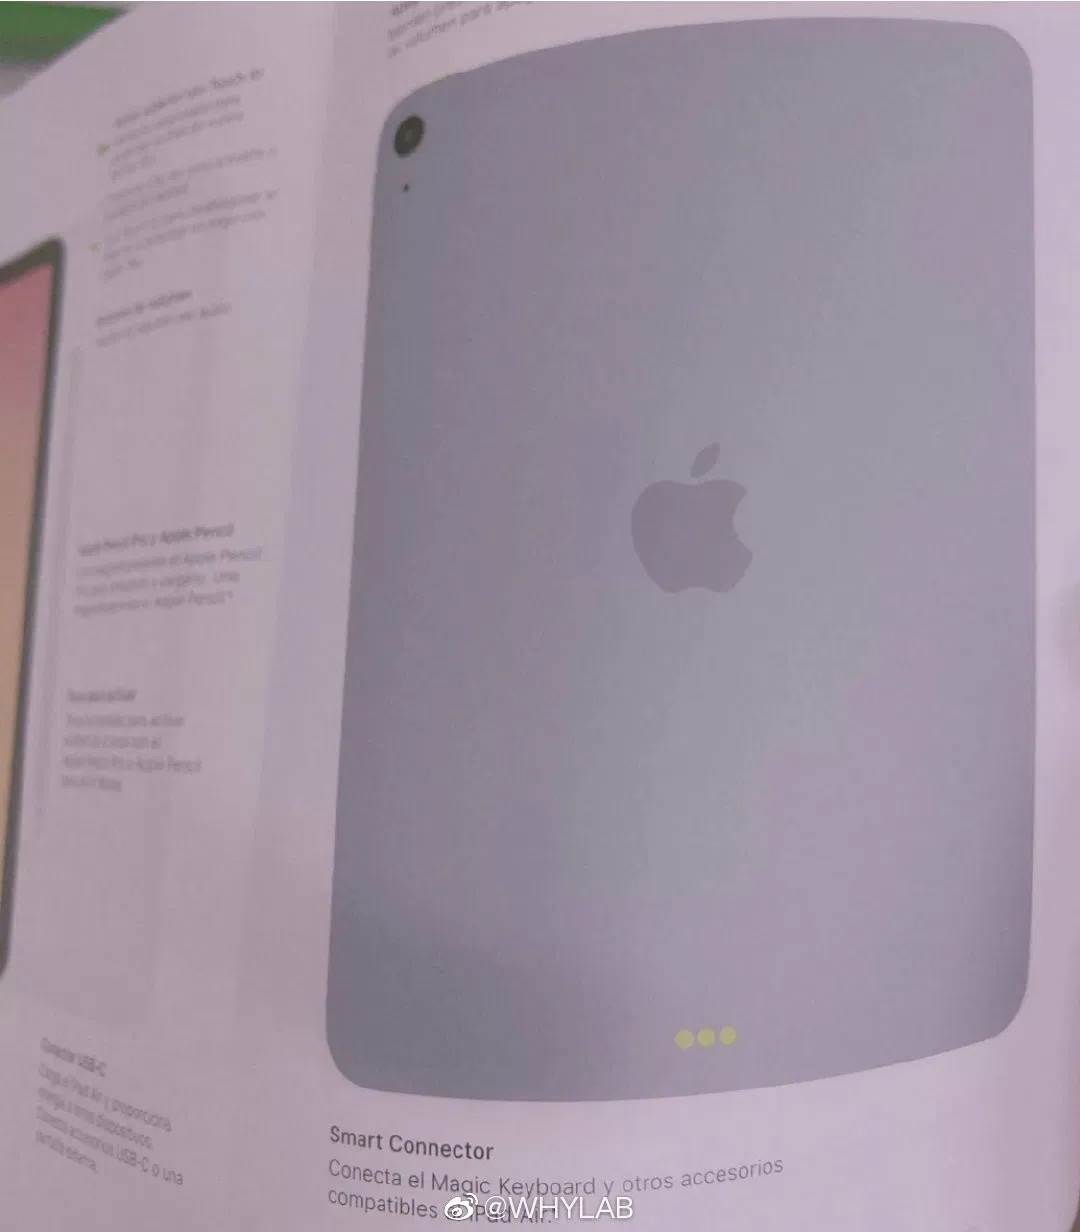 Wyciekły zdjęcia instrukcji obsługi iPad Air 2020. Urządzenie ma zupełnie nowy wygląd i Touch ID w przycisku zasilania polecane, ciekawostki iPad Air 4g, iPad Air 4-gen, iPad Air 2020, Apple  W chińskim serwisie społecznościowym Weibo pojawiły się zdjęcia instrukcji obsługi przyszłego tabletu Apple iPad Air 2020, który według plotek może zostać zaprezentowane na początku września.
 Air3